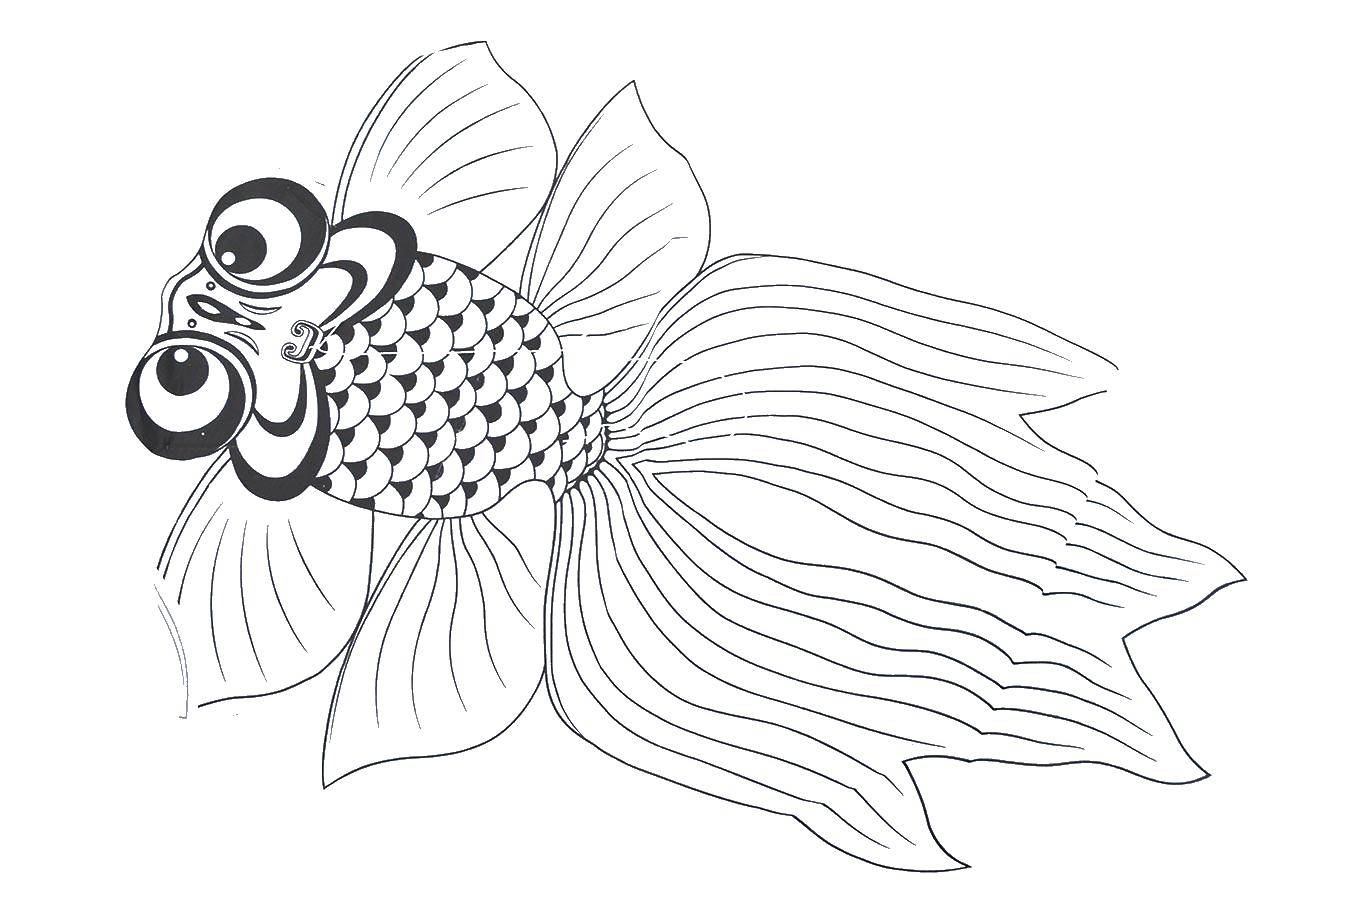   Золотая рыбка с большими глазами